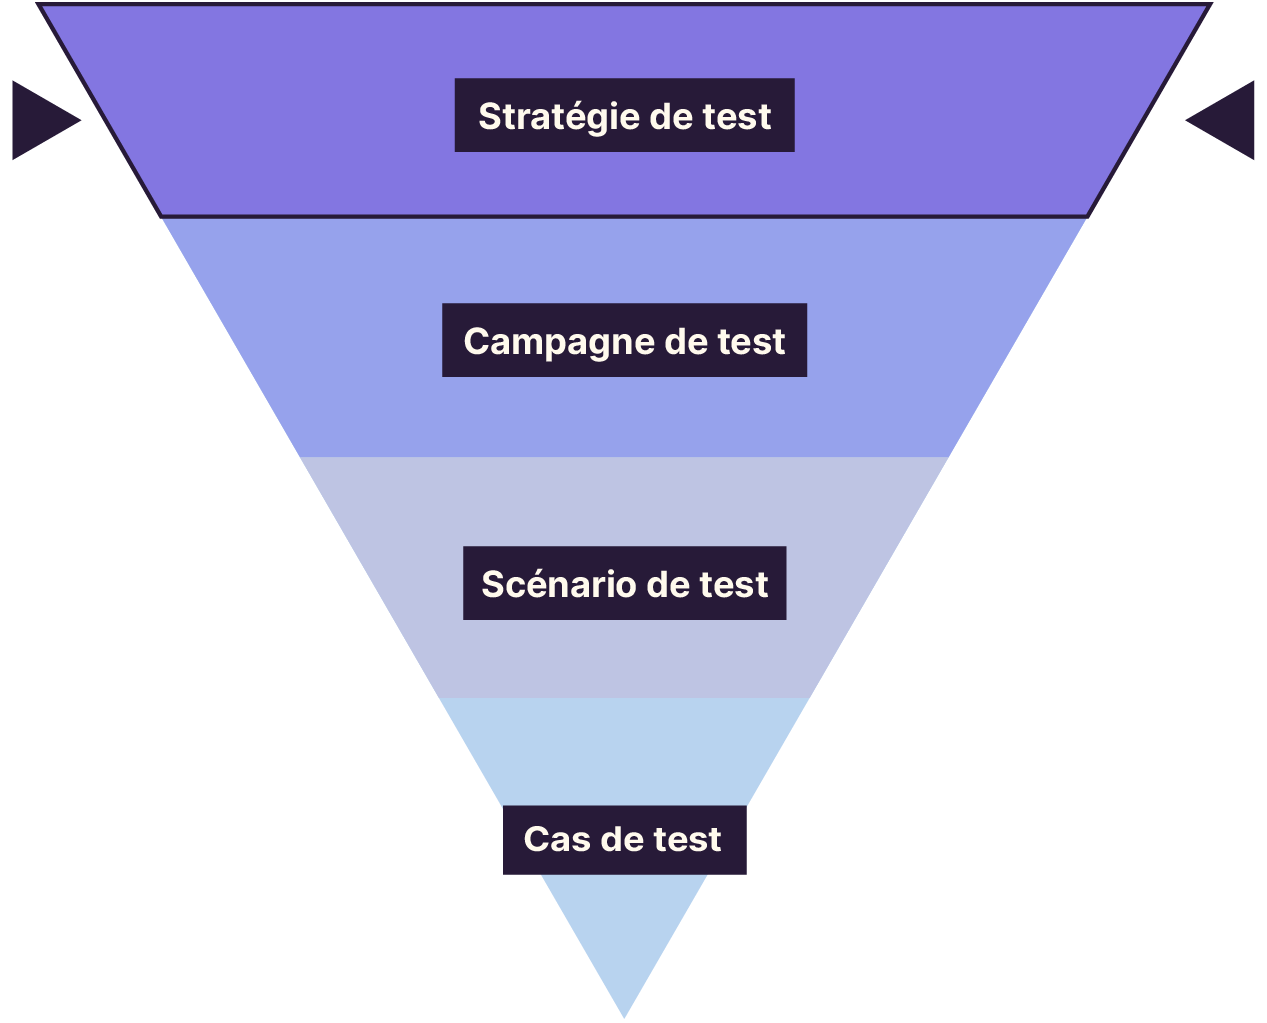 La pyramide du niveau le plus bas au plus élevé : stratégie de test, campagne de test, scénario de test, cas de test. L’étage “stratégie de test” est mis en avant.